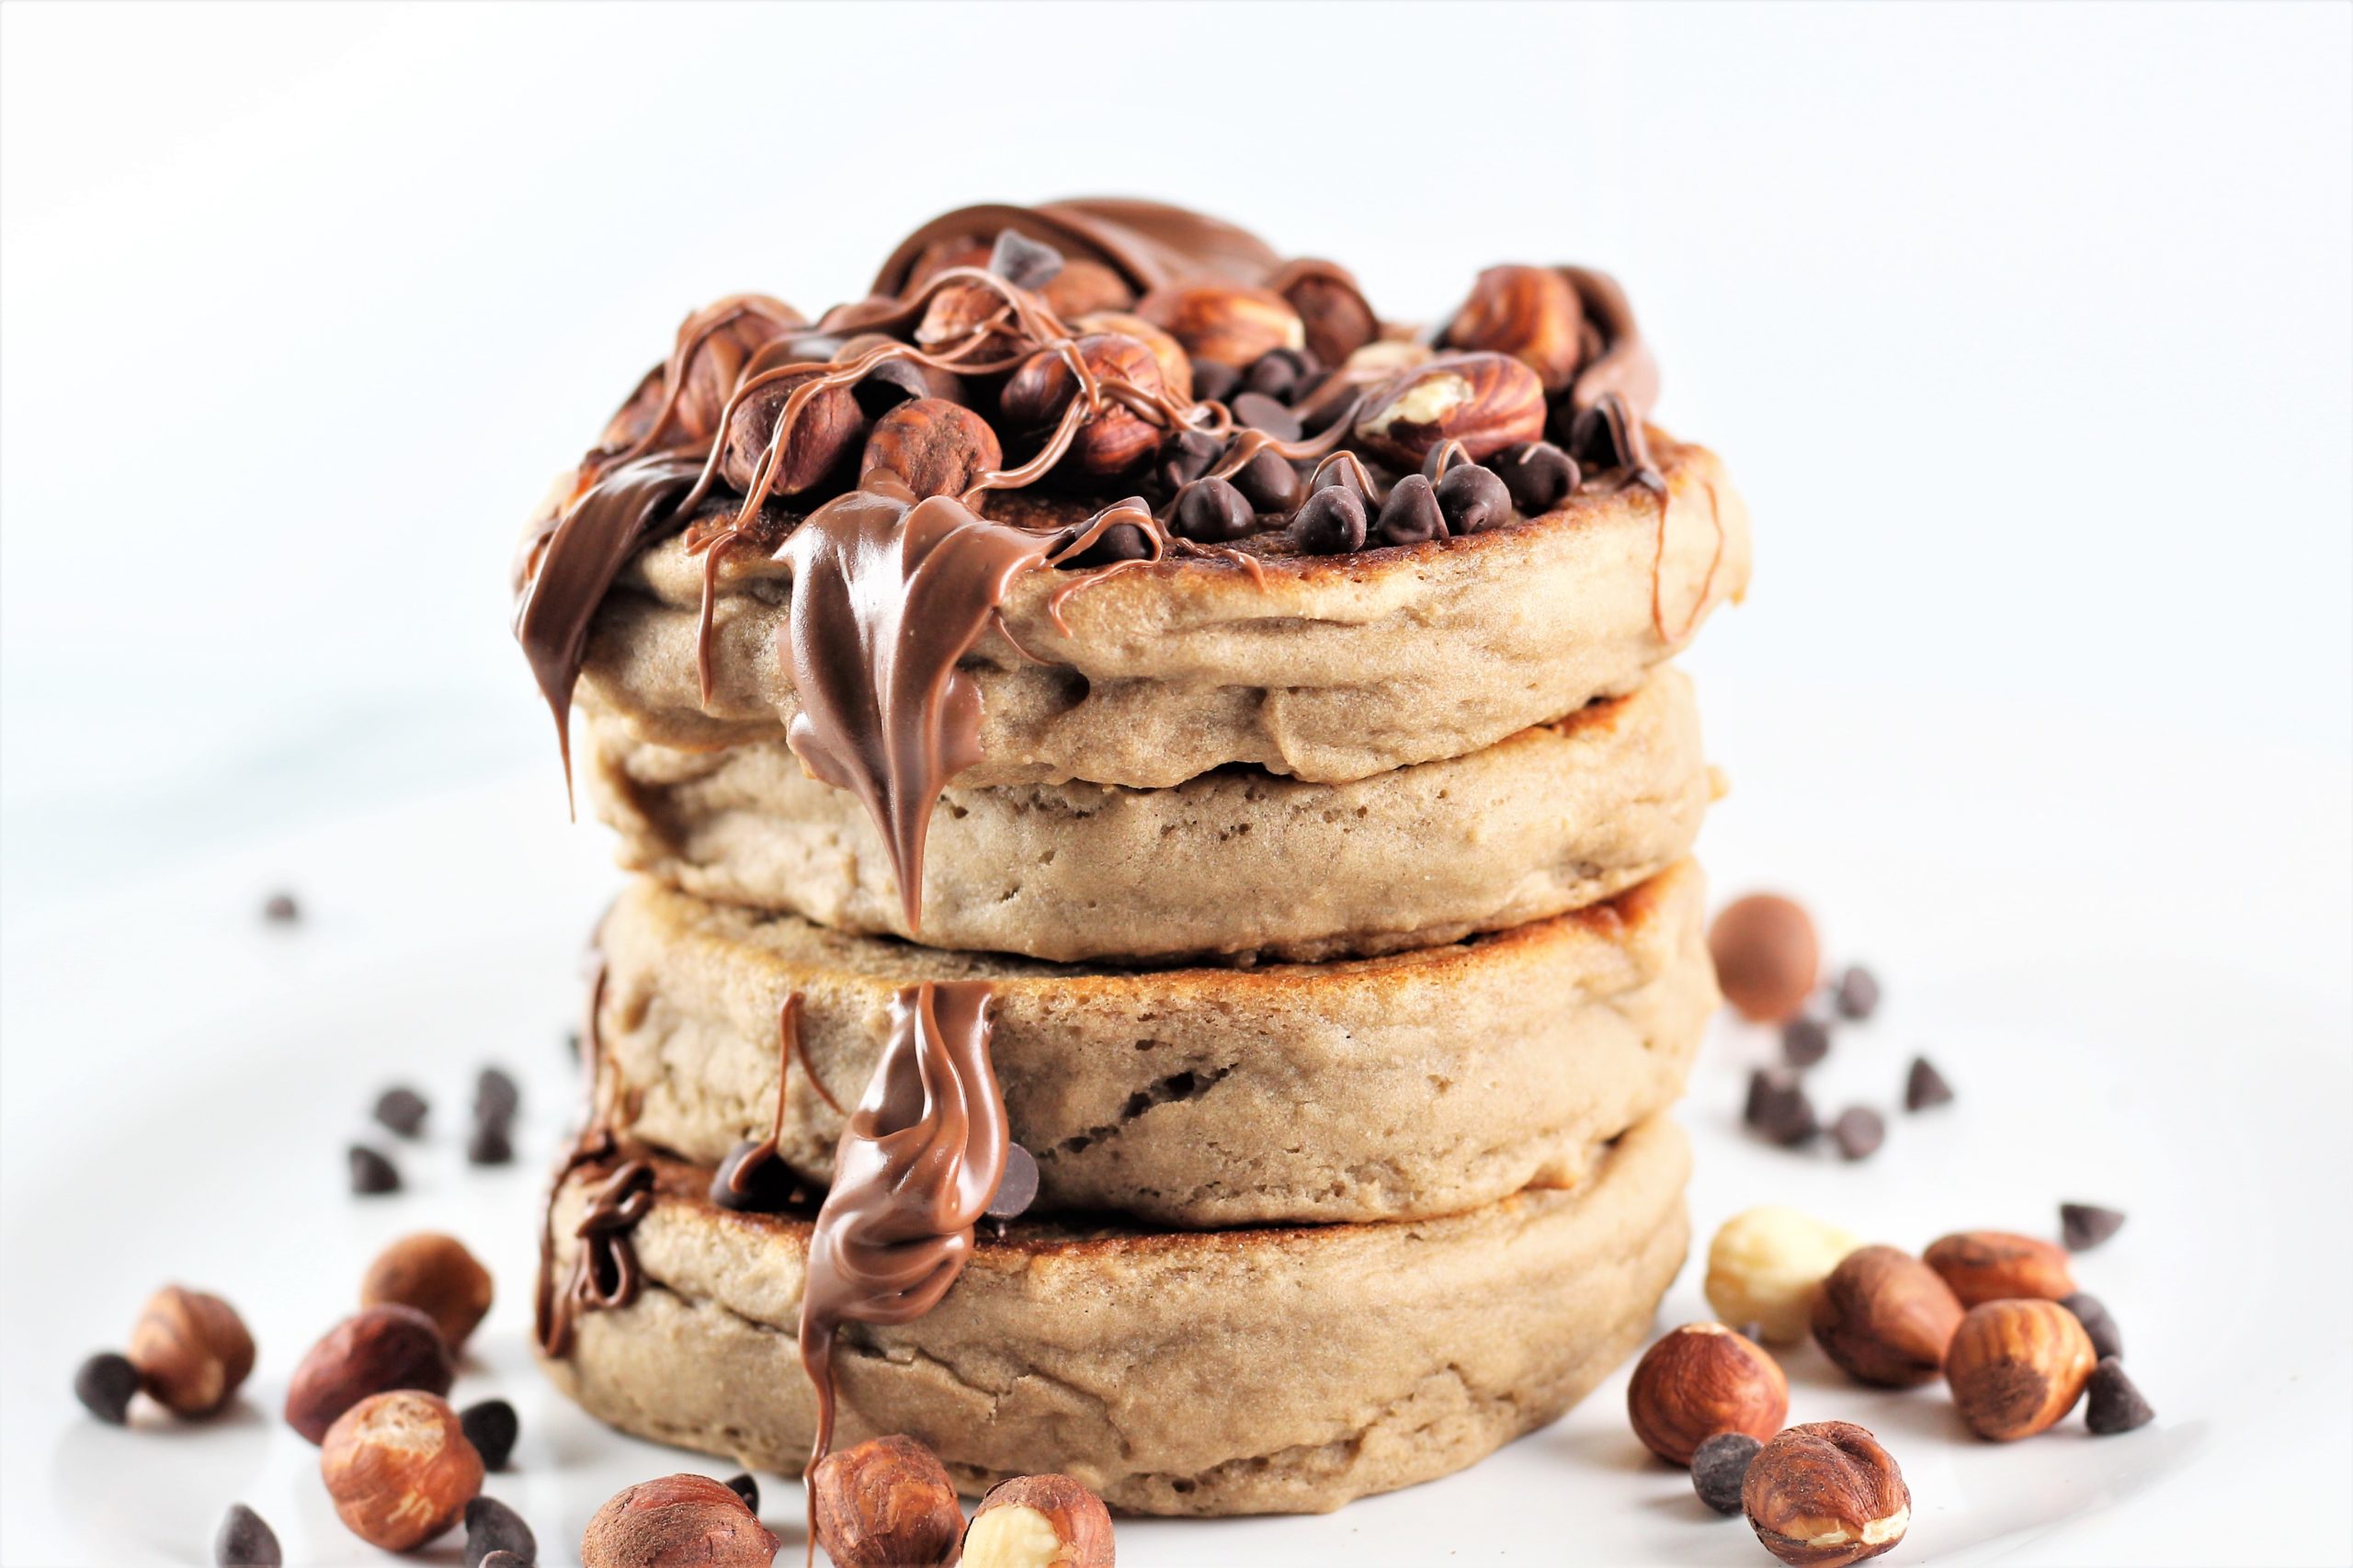 pancakes with chocolate hazelnut spread